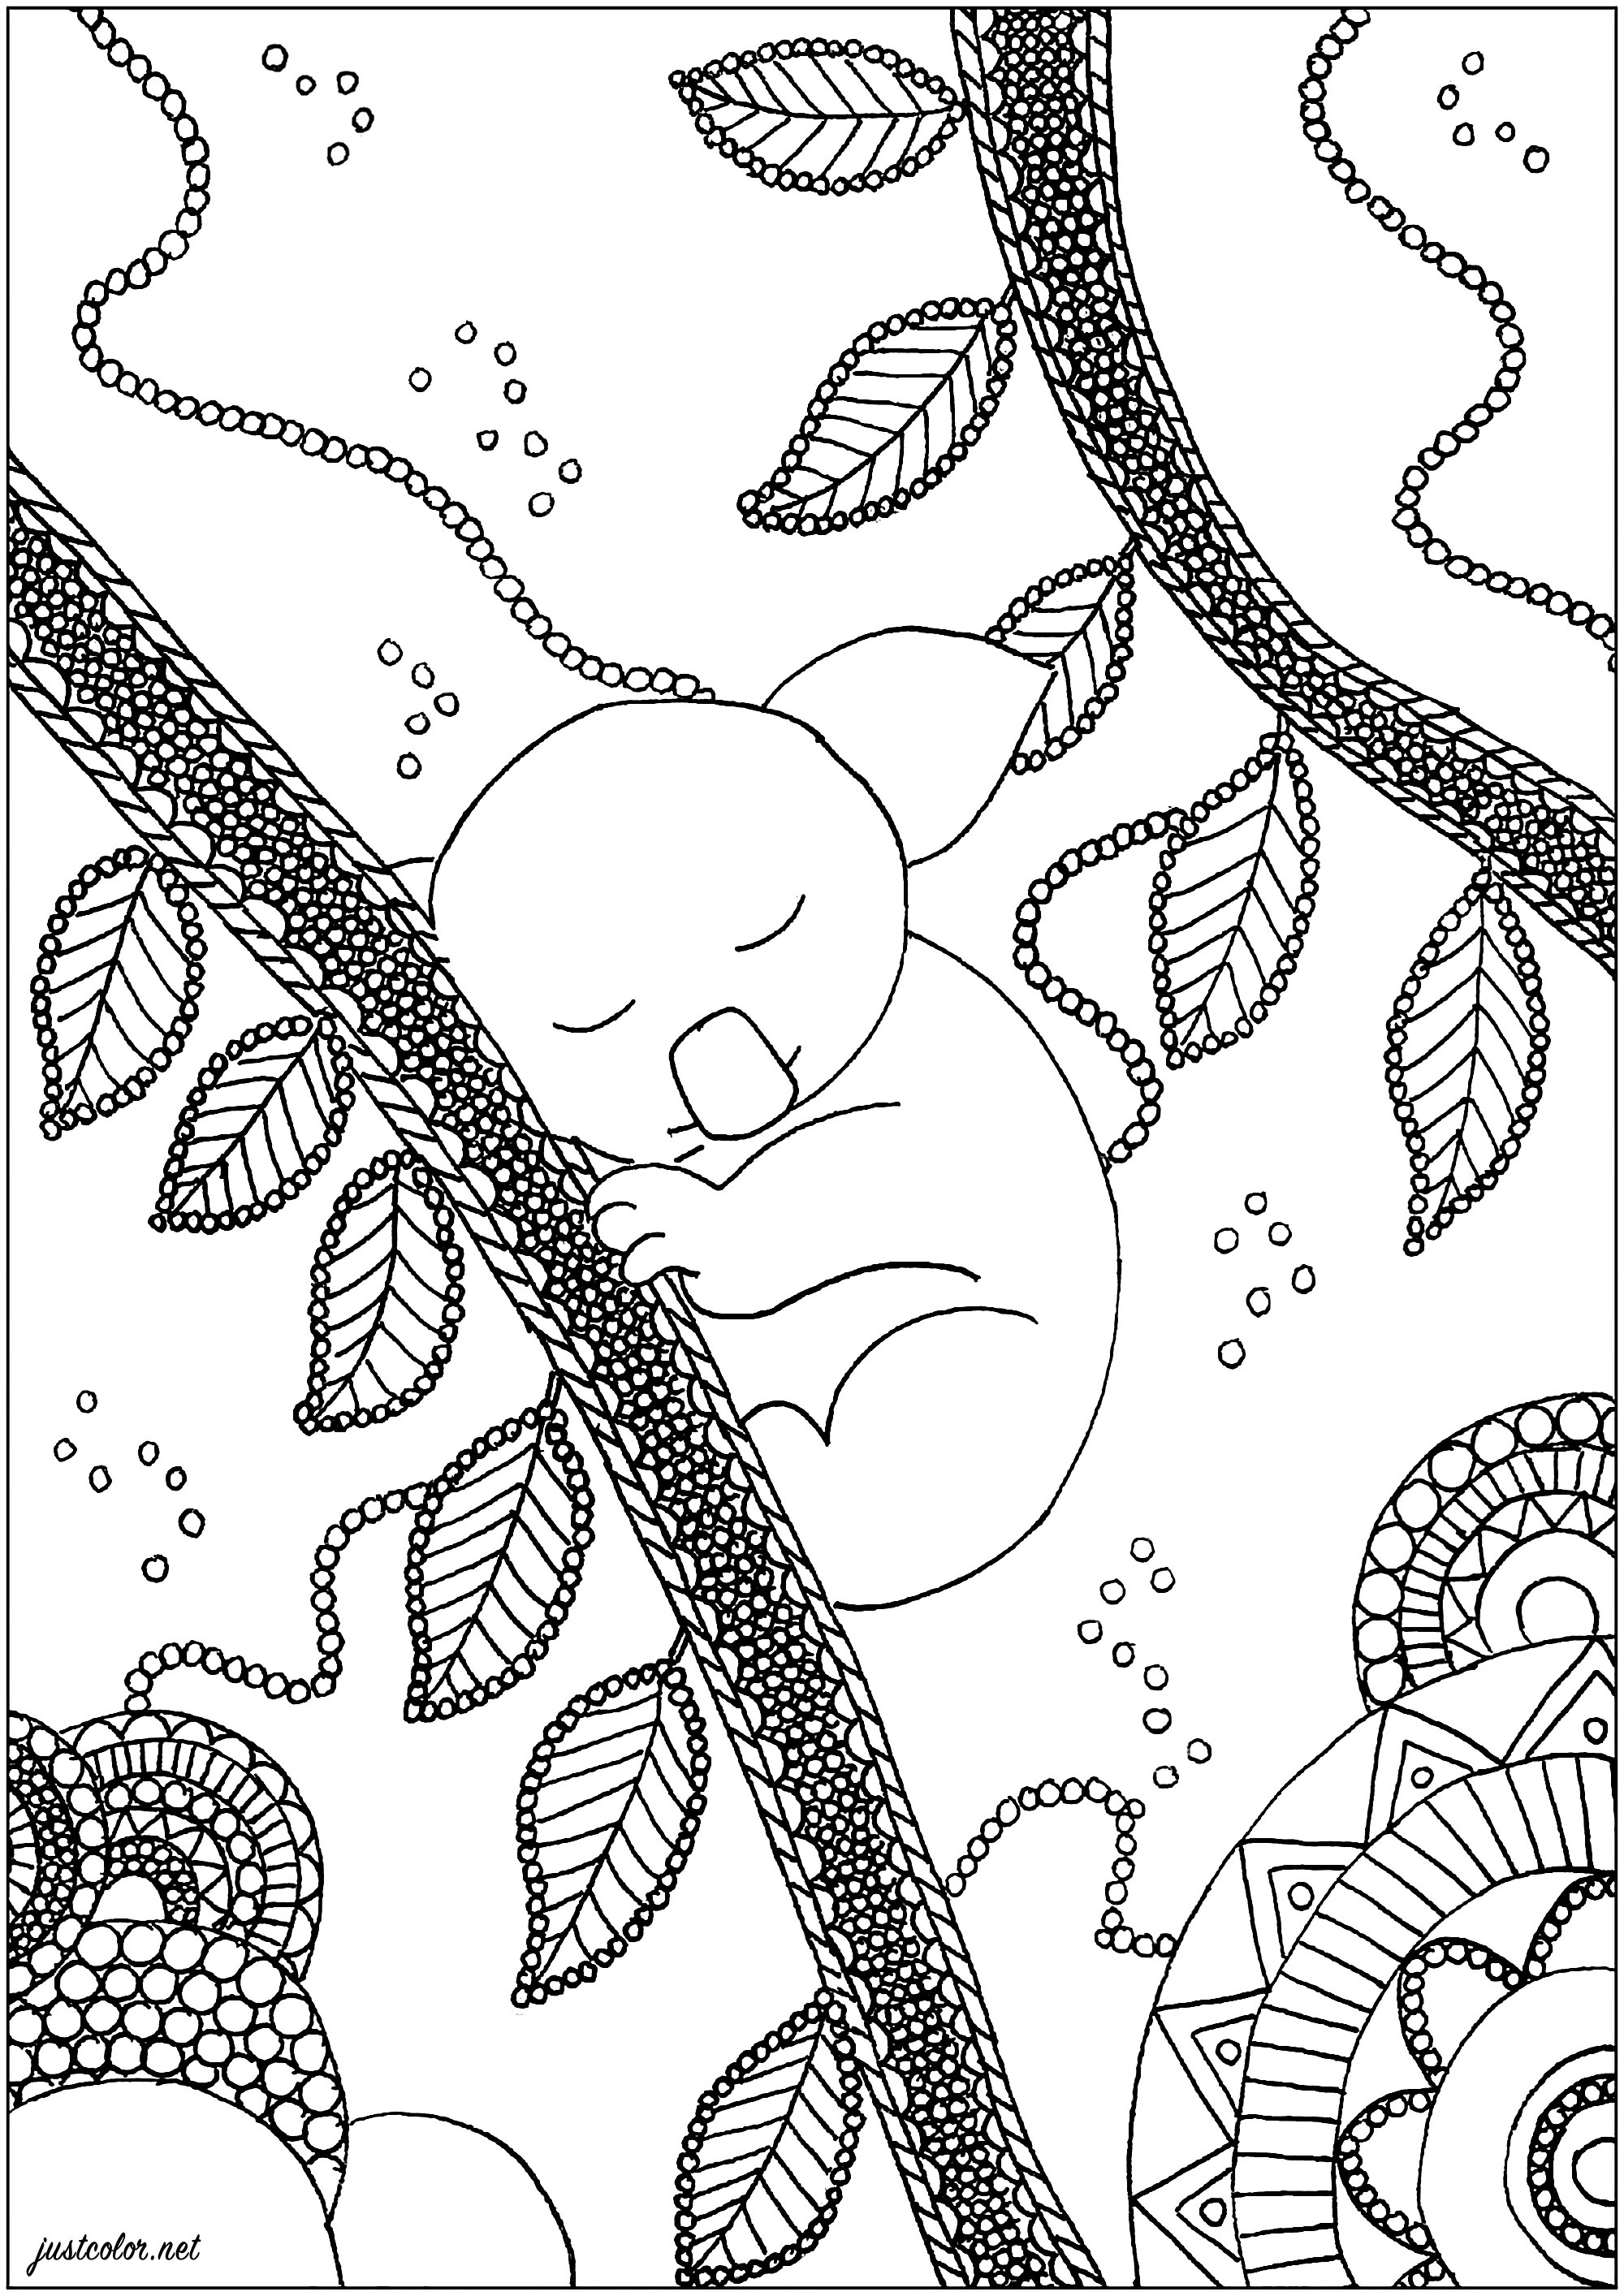 Coloring page : Koala bears - 2